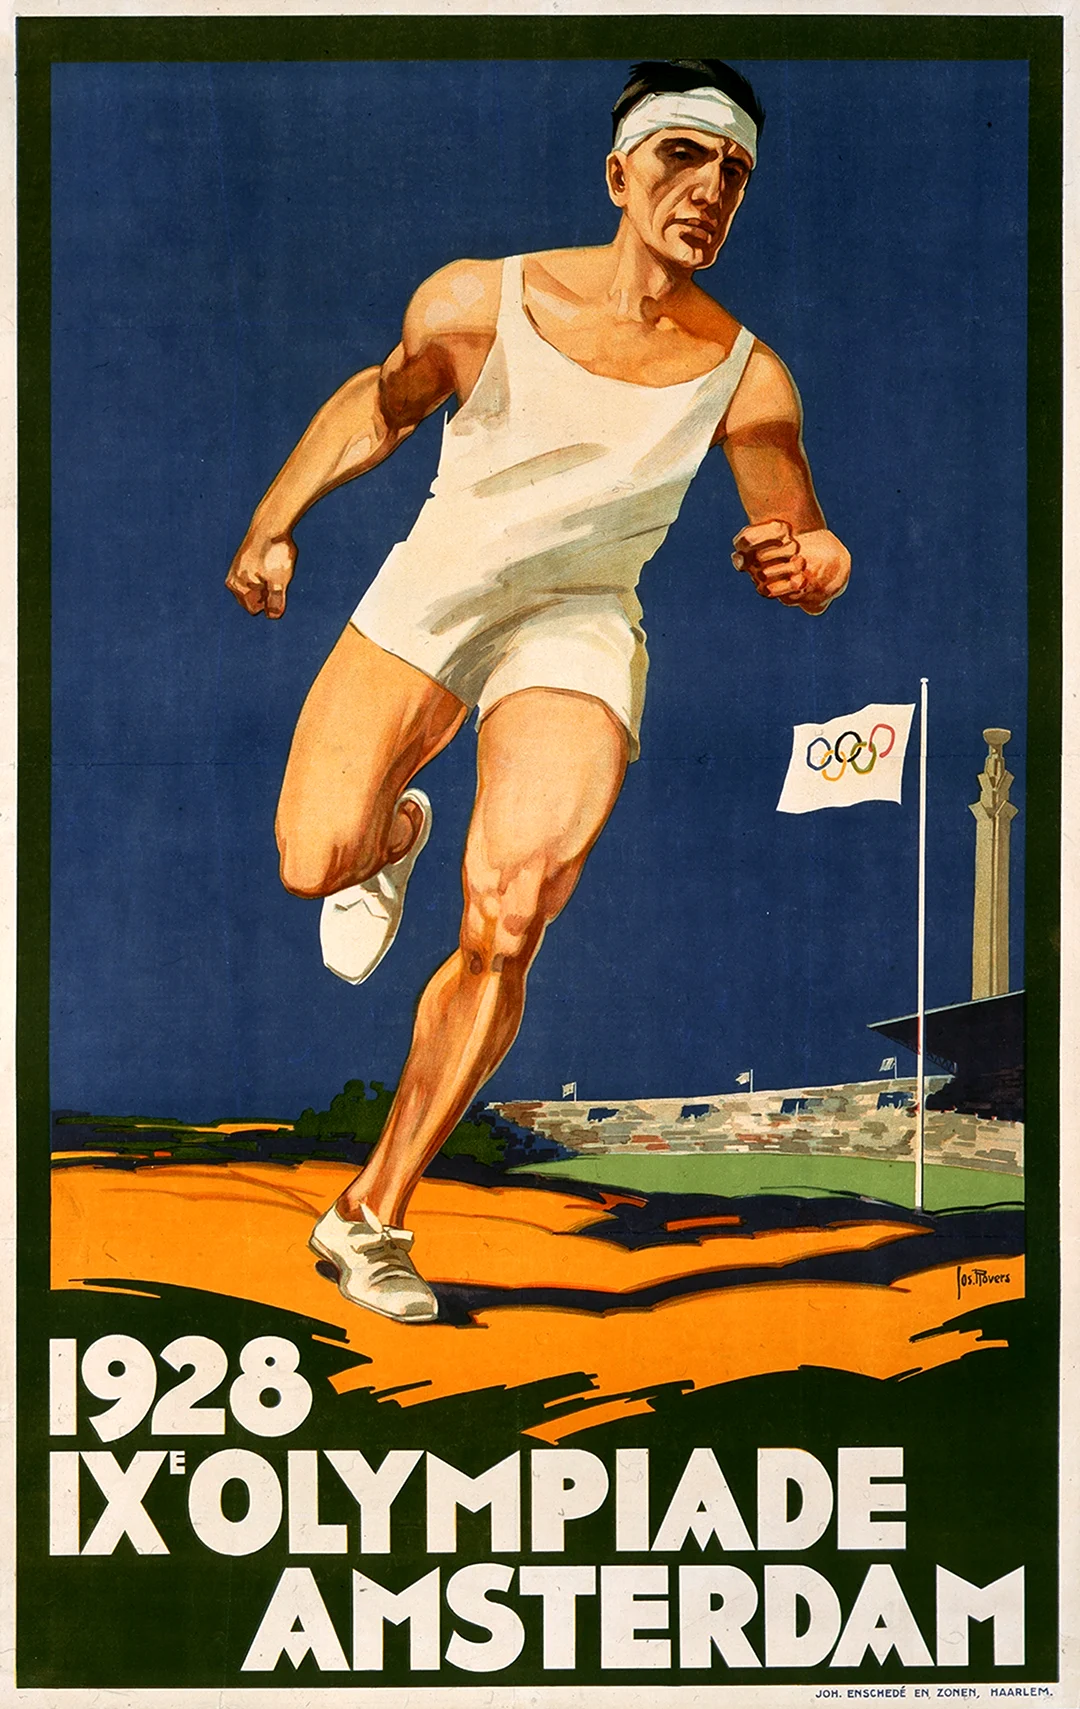 Игры IX олимпиады Амстердам Нидерланды 1928